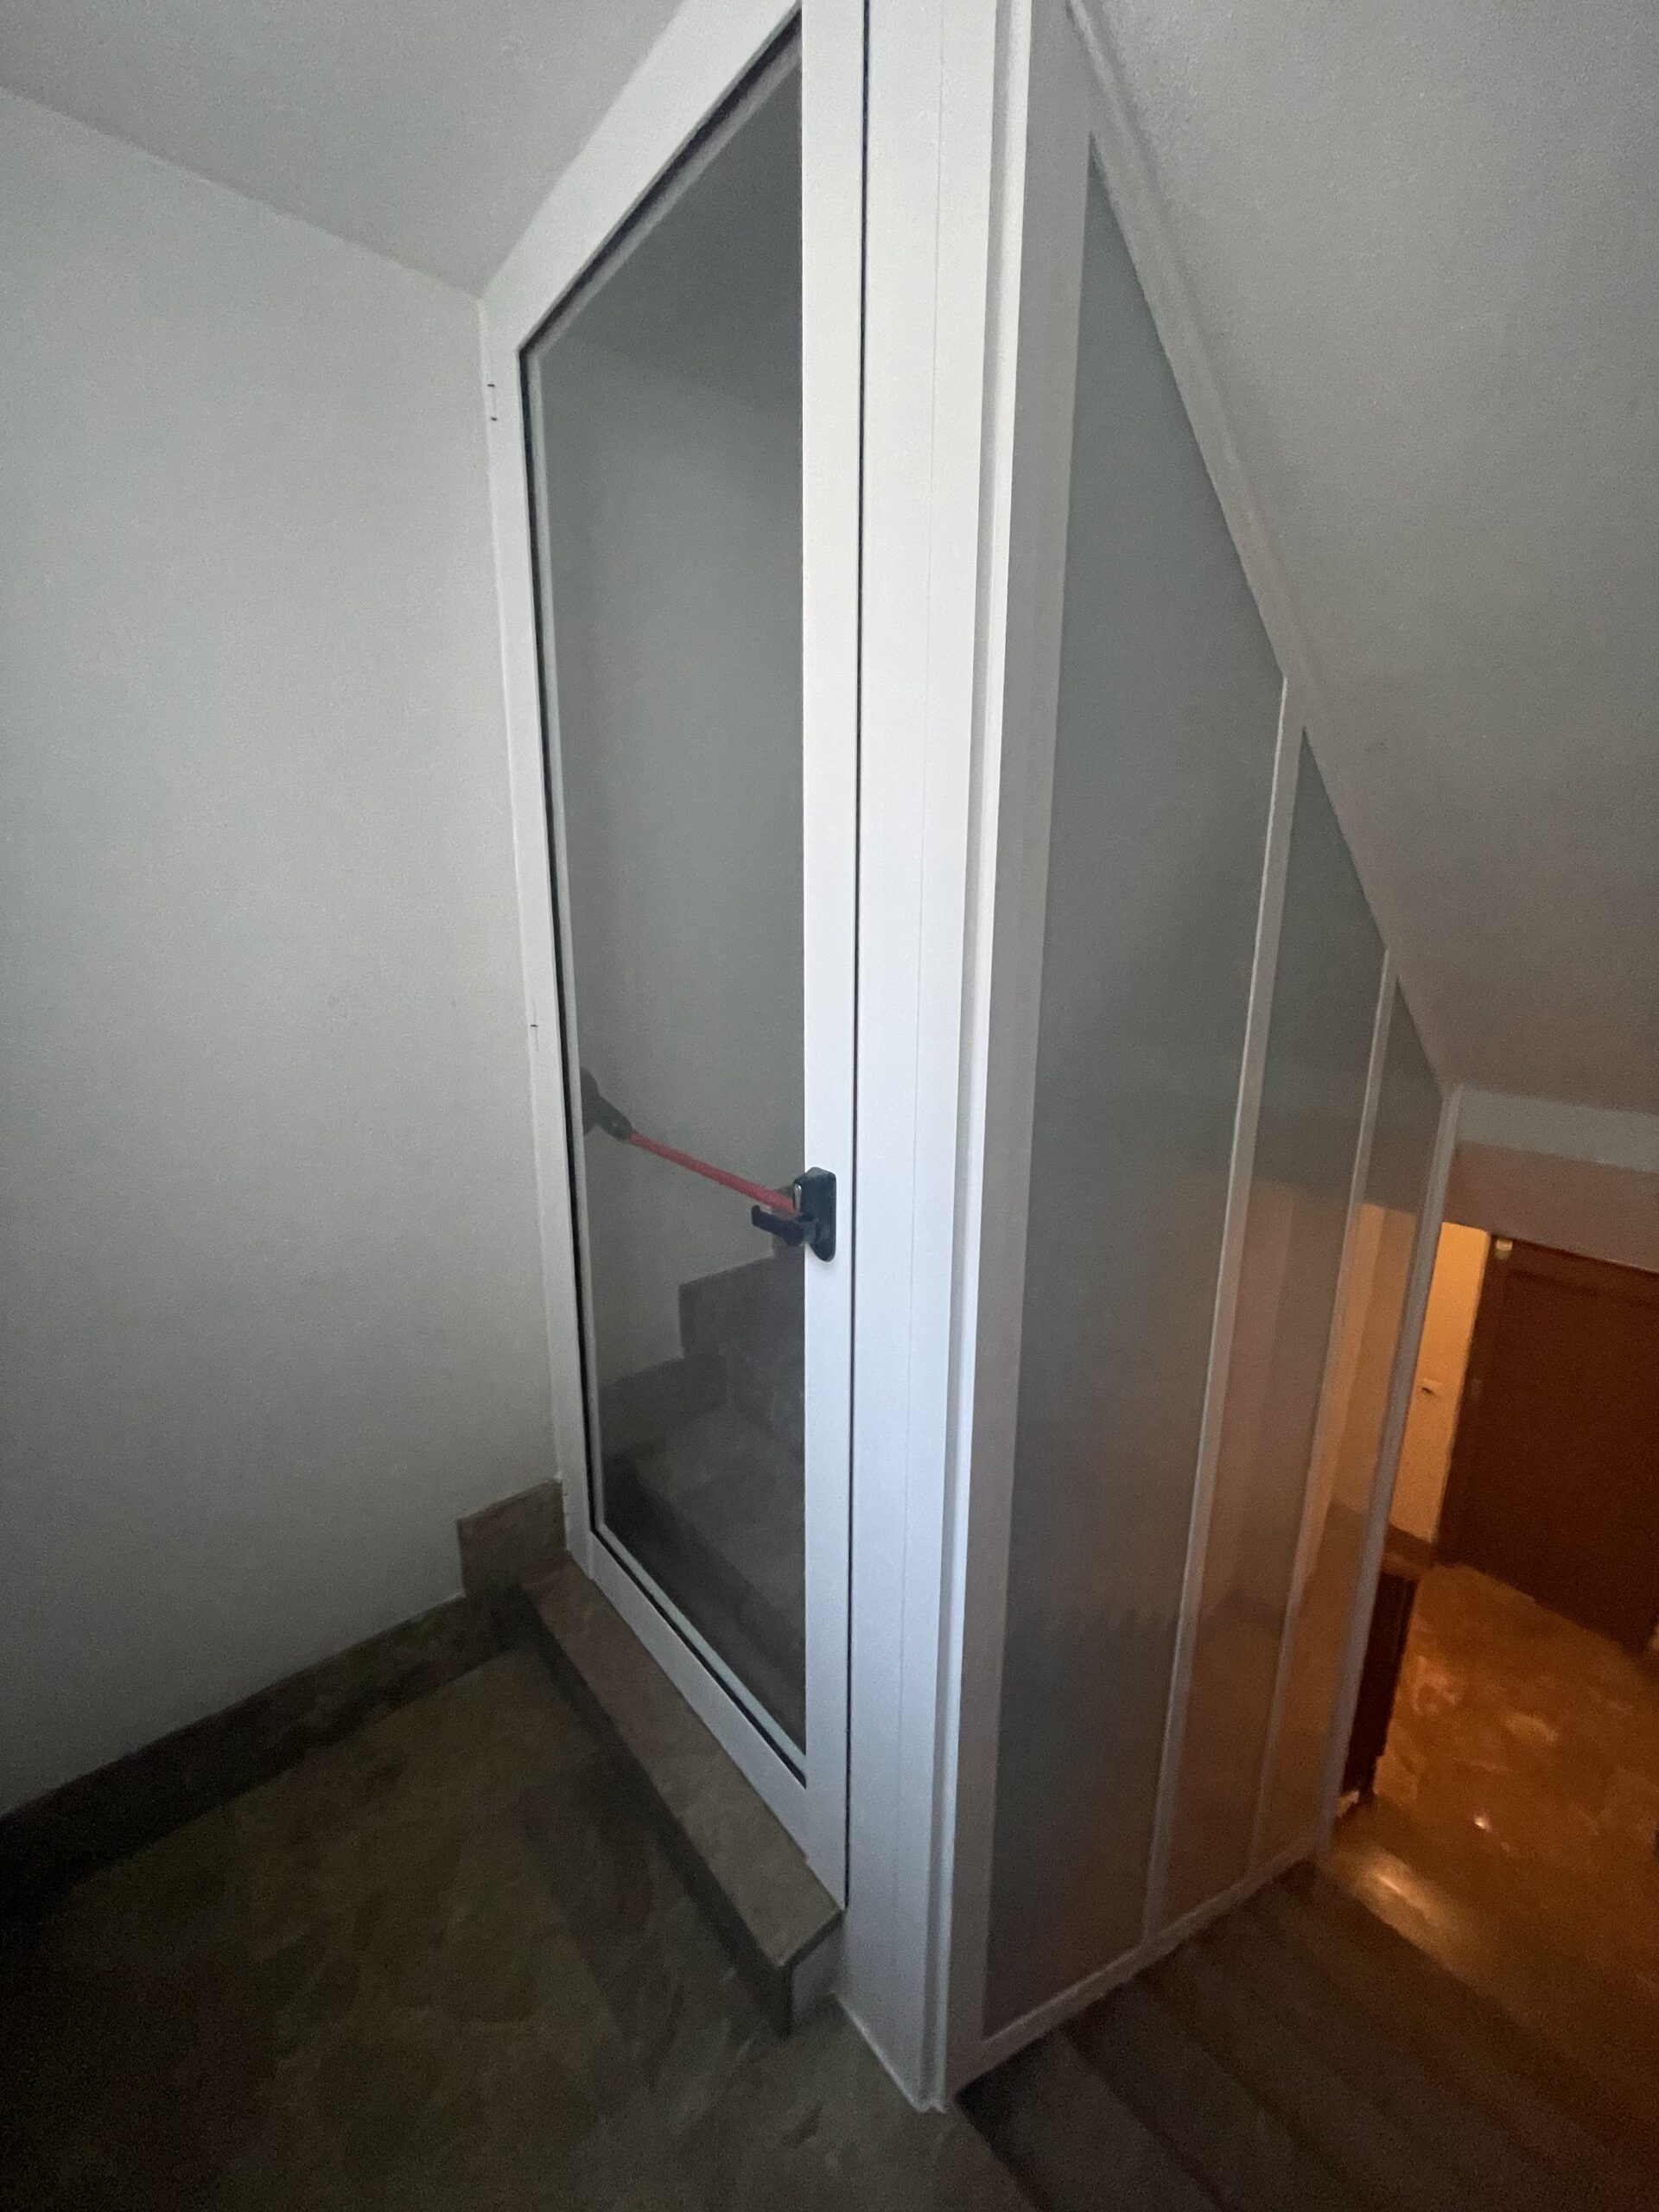 Instalacion de cerramiento en escalera diseño de puerta con cristales opacos